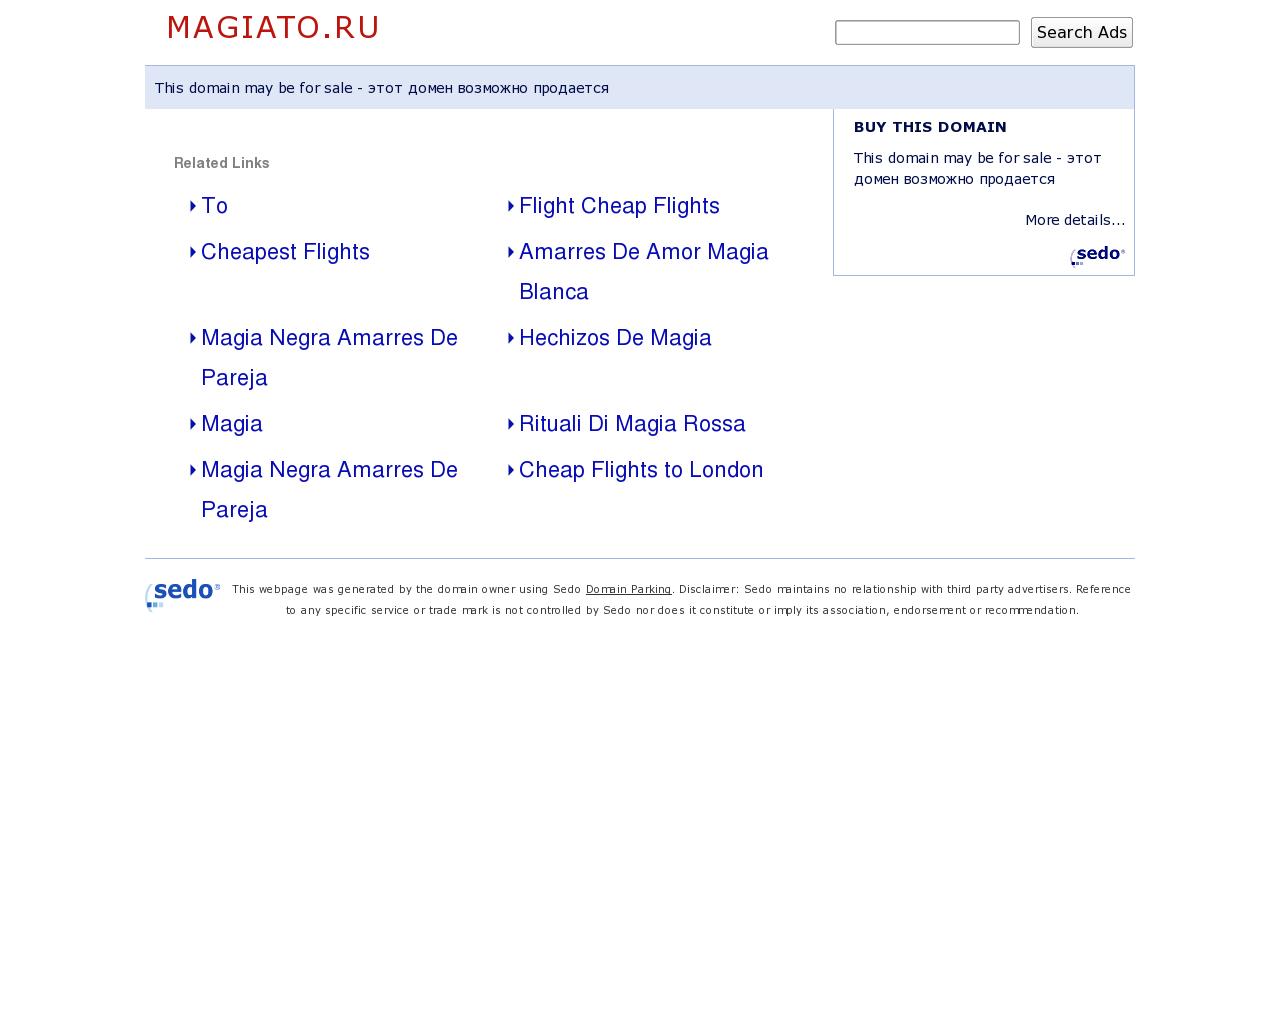 Изображение сайта magiato.ru в разрешении 1280x1024